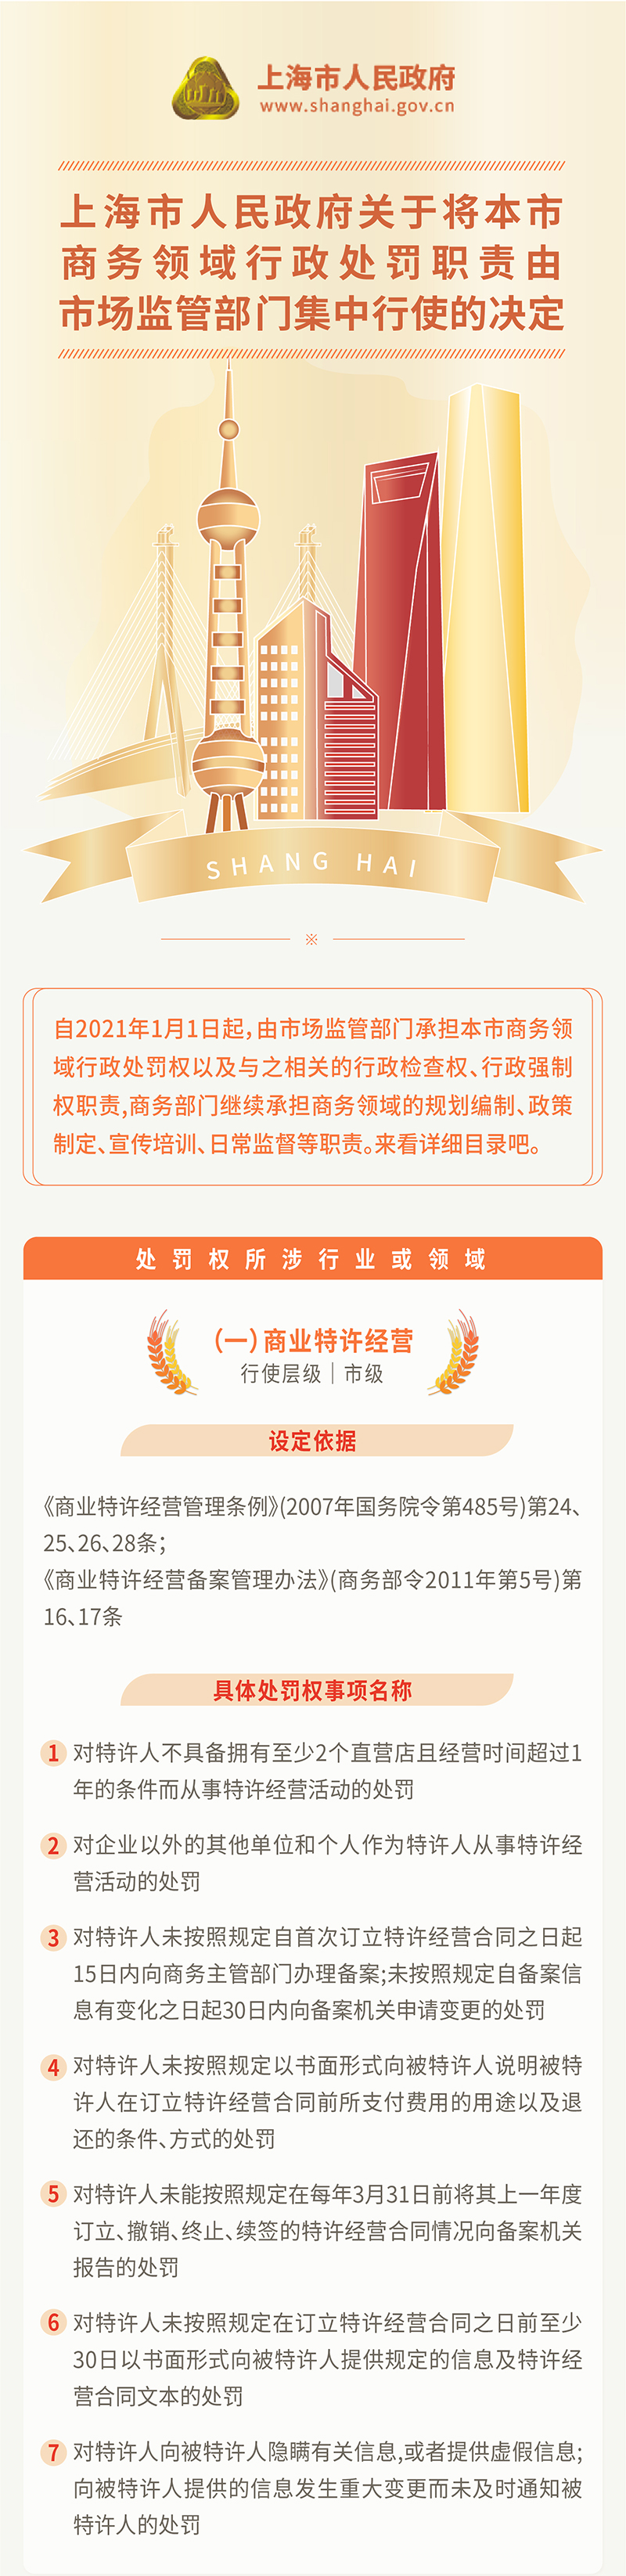 20210105中国上海图表-04.jpg